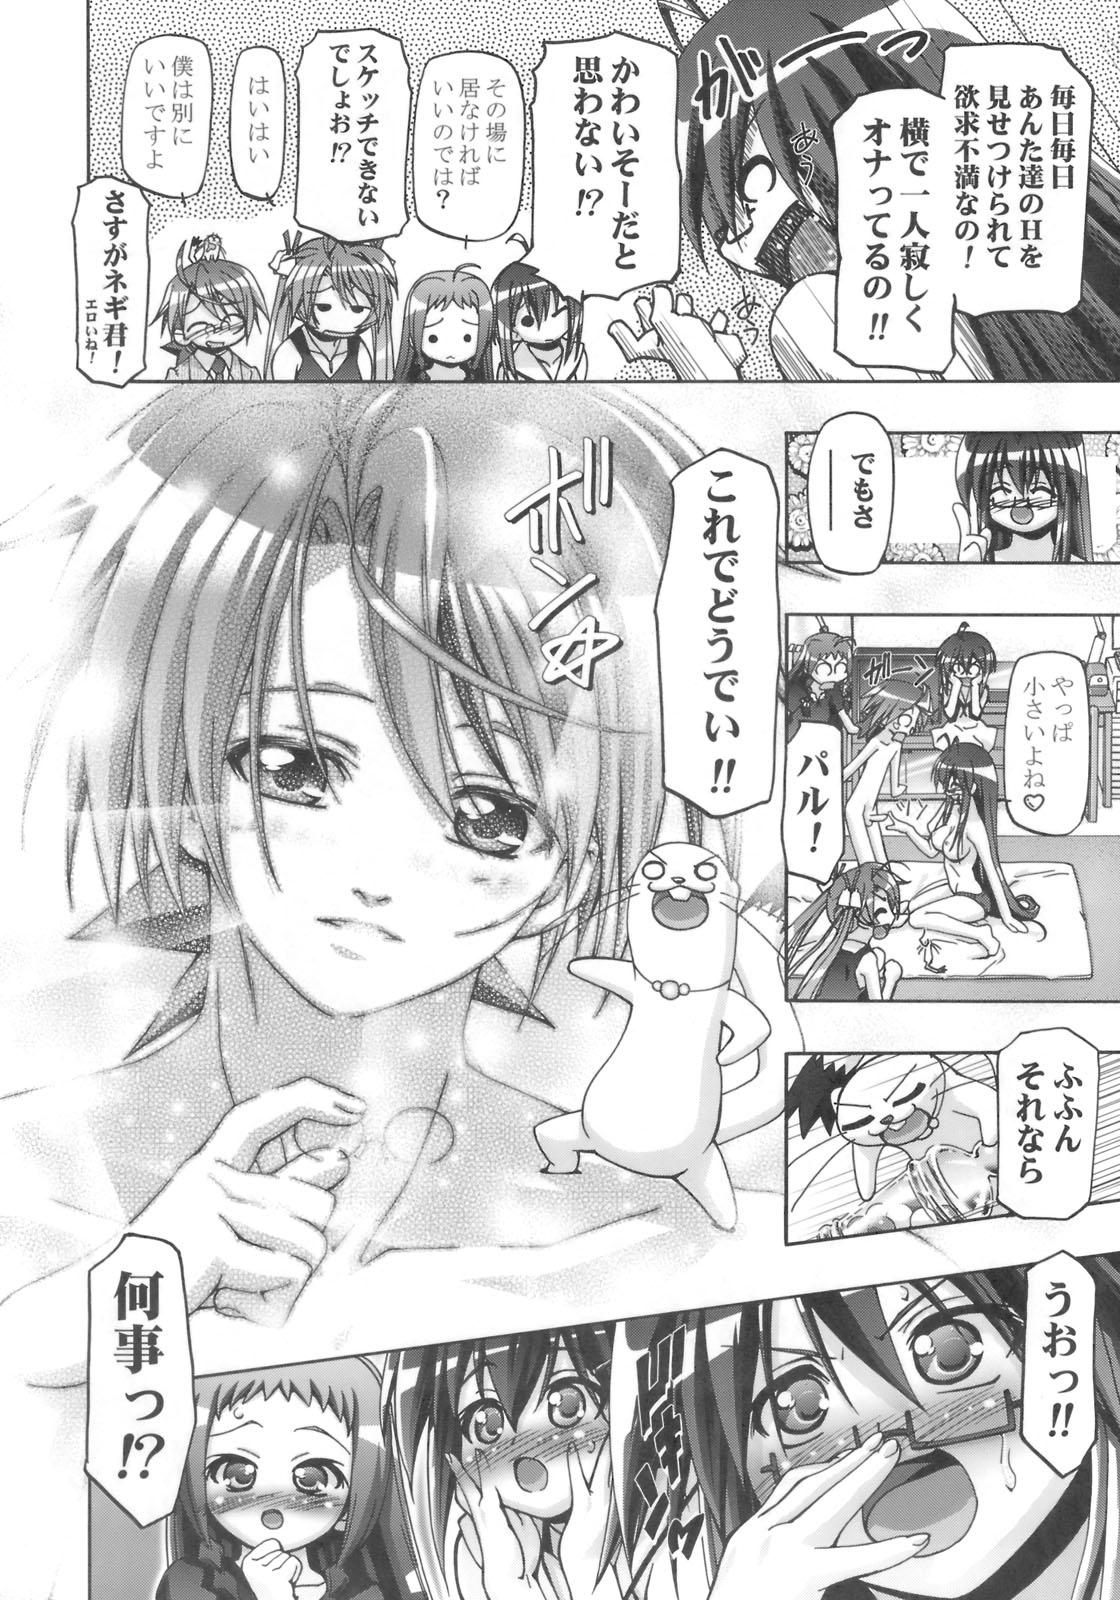 Exgirlfriend Mahora Gakuen Tyuutoubu 3-A 3 Jikanme Negi X Haruna - Mahou sensei negima Dom - Page 5